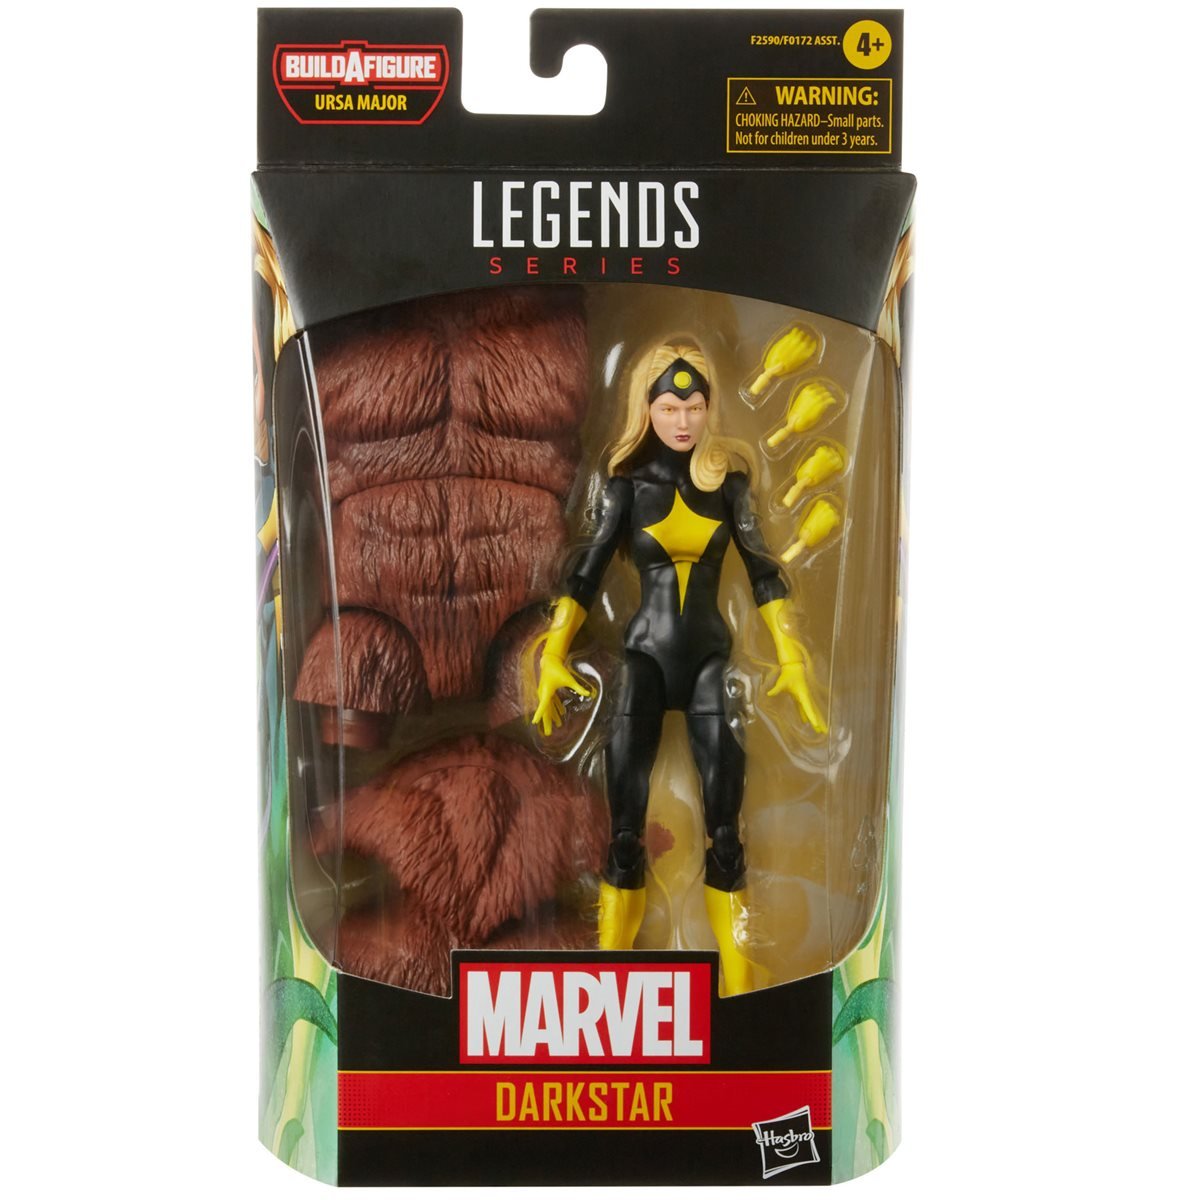 Marvel Legends Ursa Major build a figure wave Comic Darkstar 6-inch figure packaging front